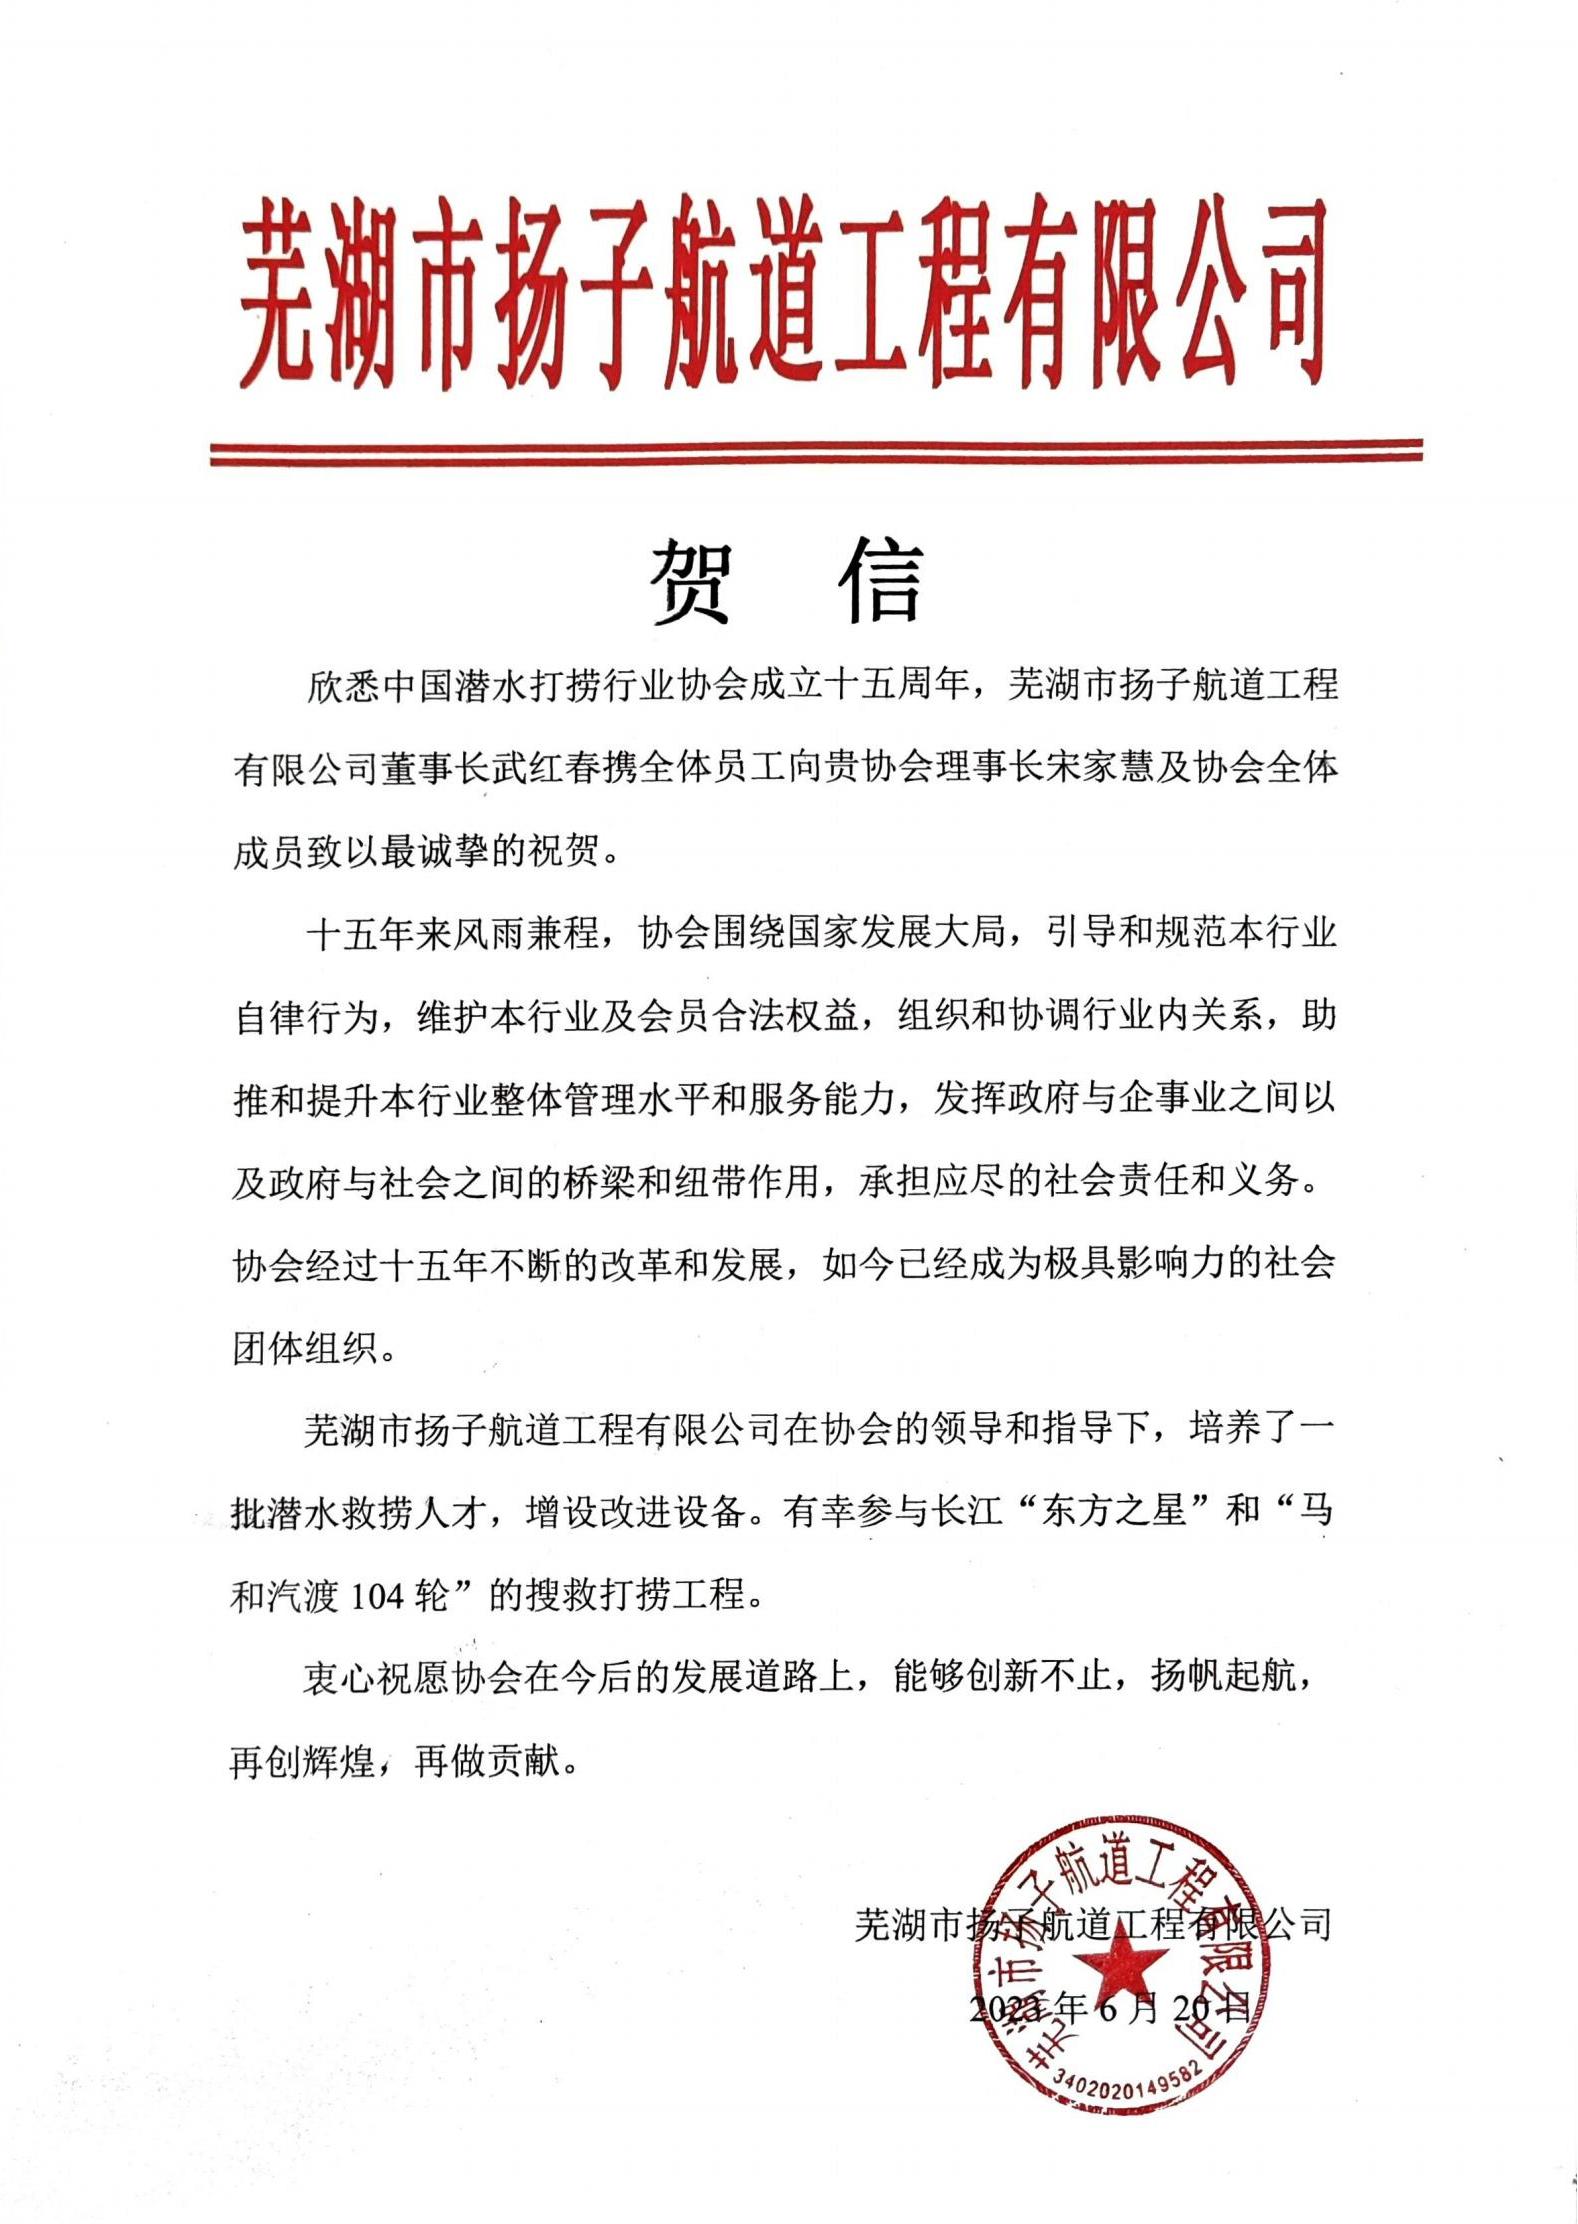 芜湖扬子航道公司来信祝贺协会成立十五周年_00.jpg